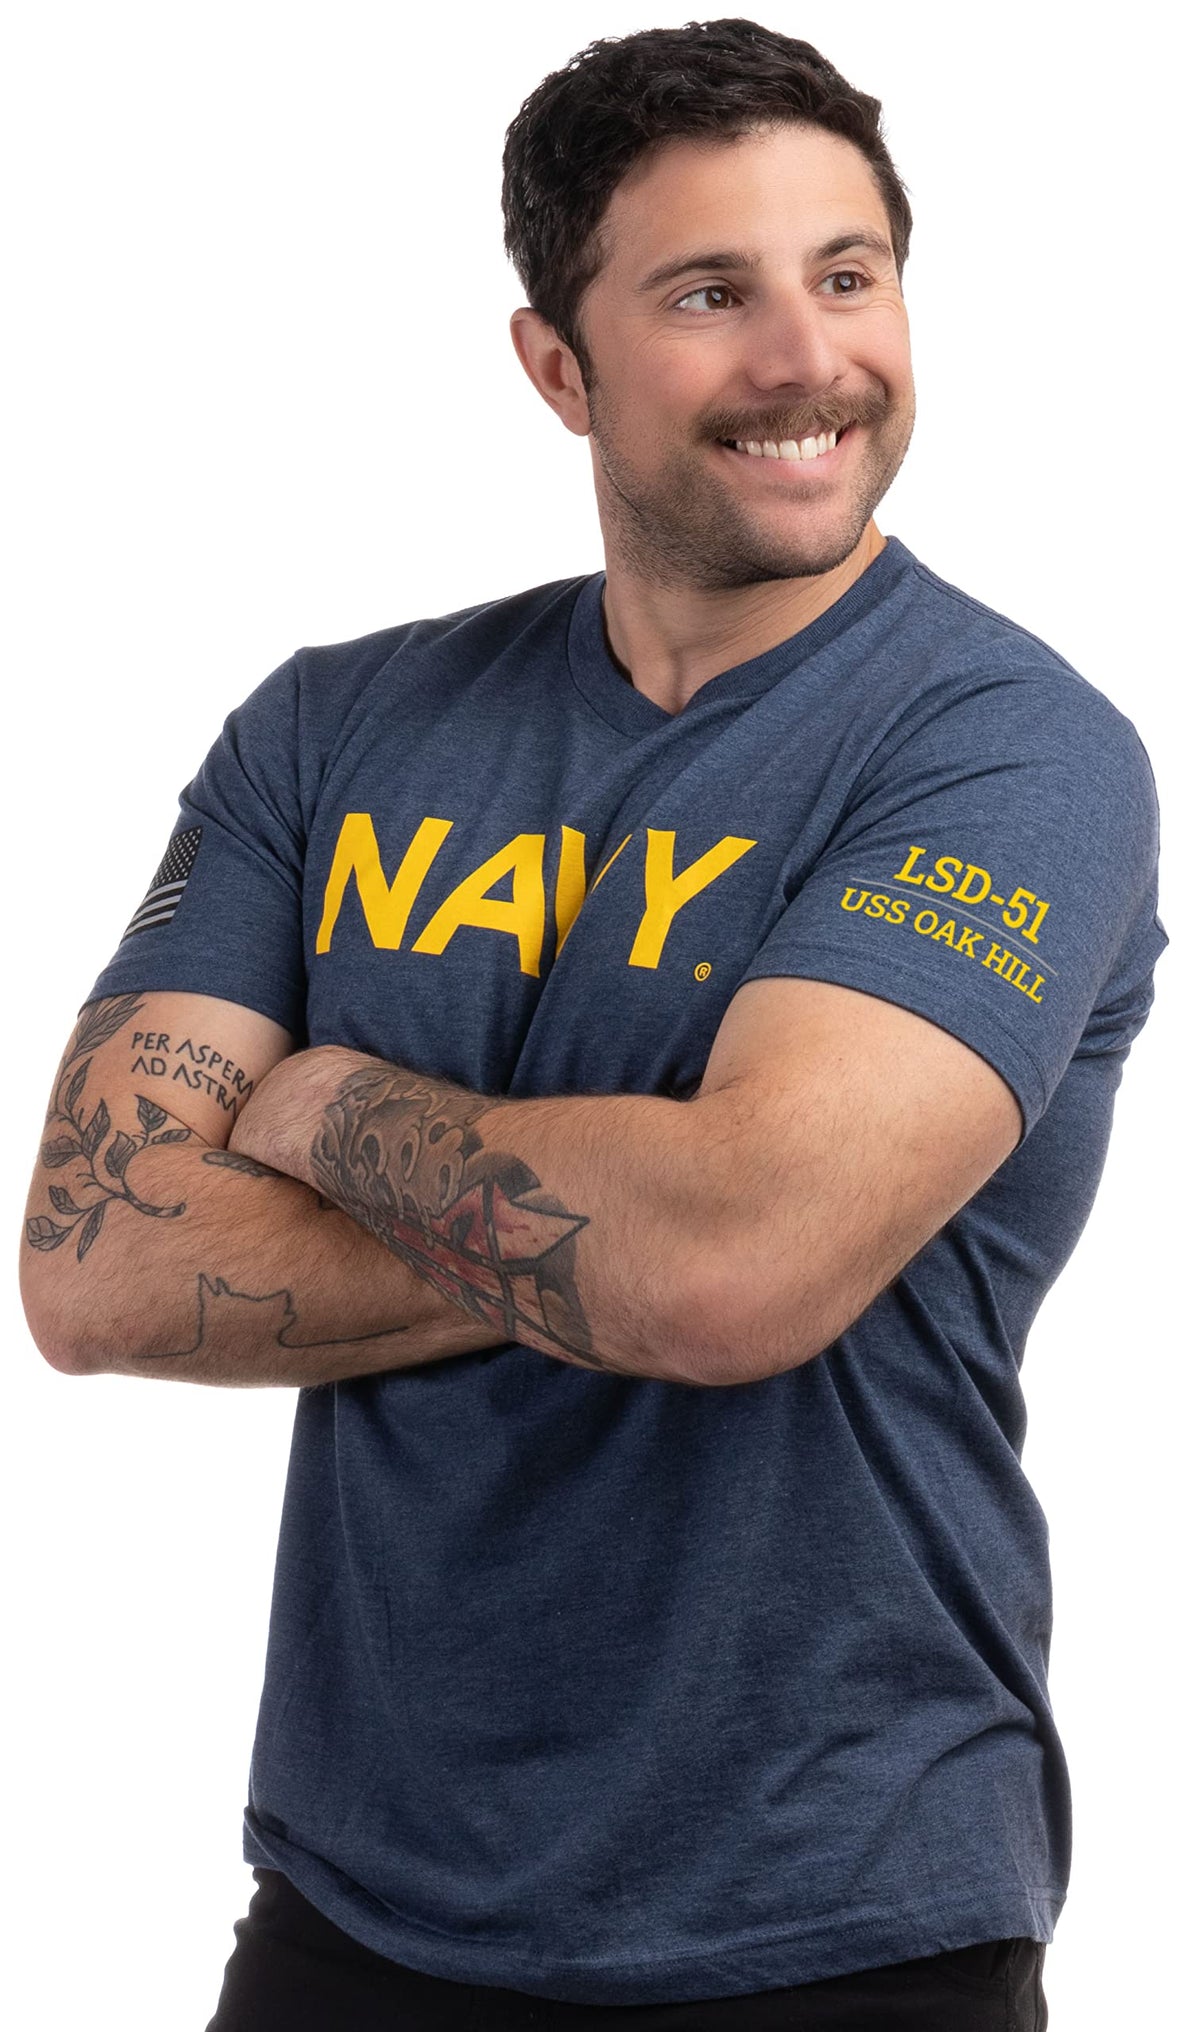 USS Oak Hill, LSD-51 | U.S. Navy Sailor Veteran USN United States Naval T-shirt for Men Women